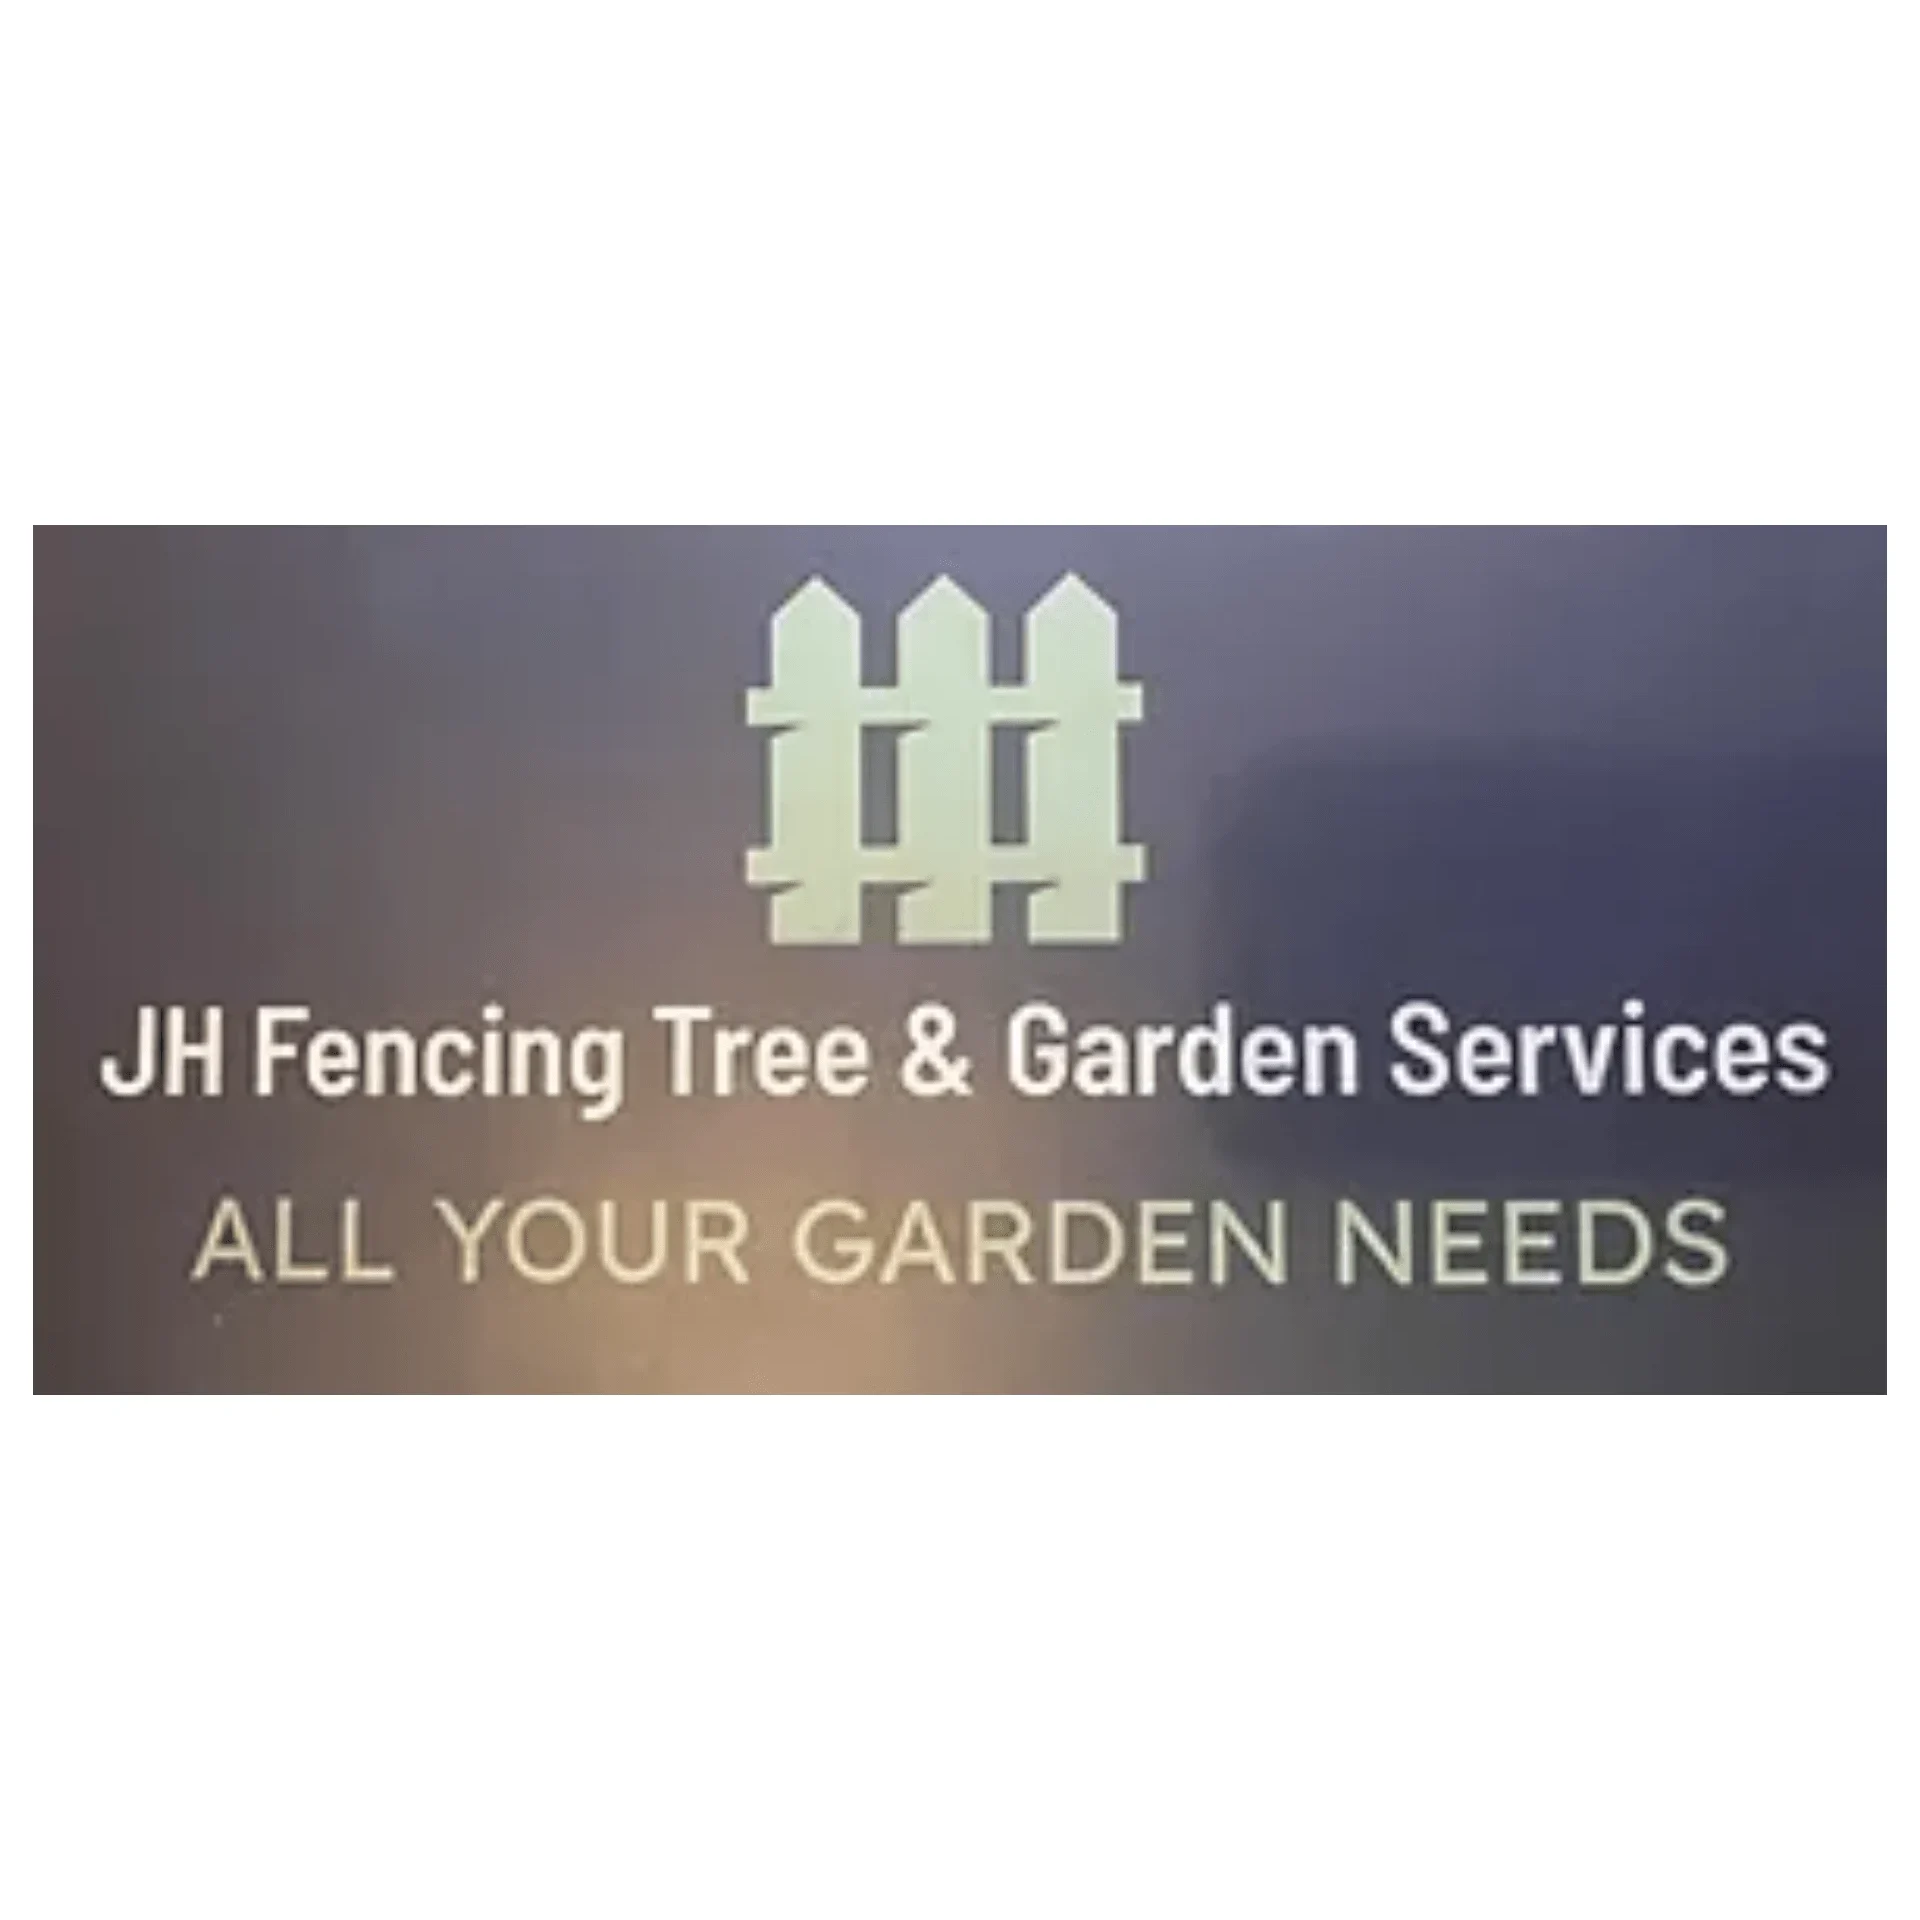 LOGO JH Fencing Tree & Garden Services Bristol 07733 381731